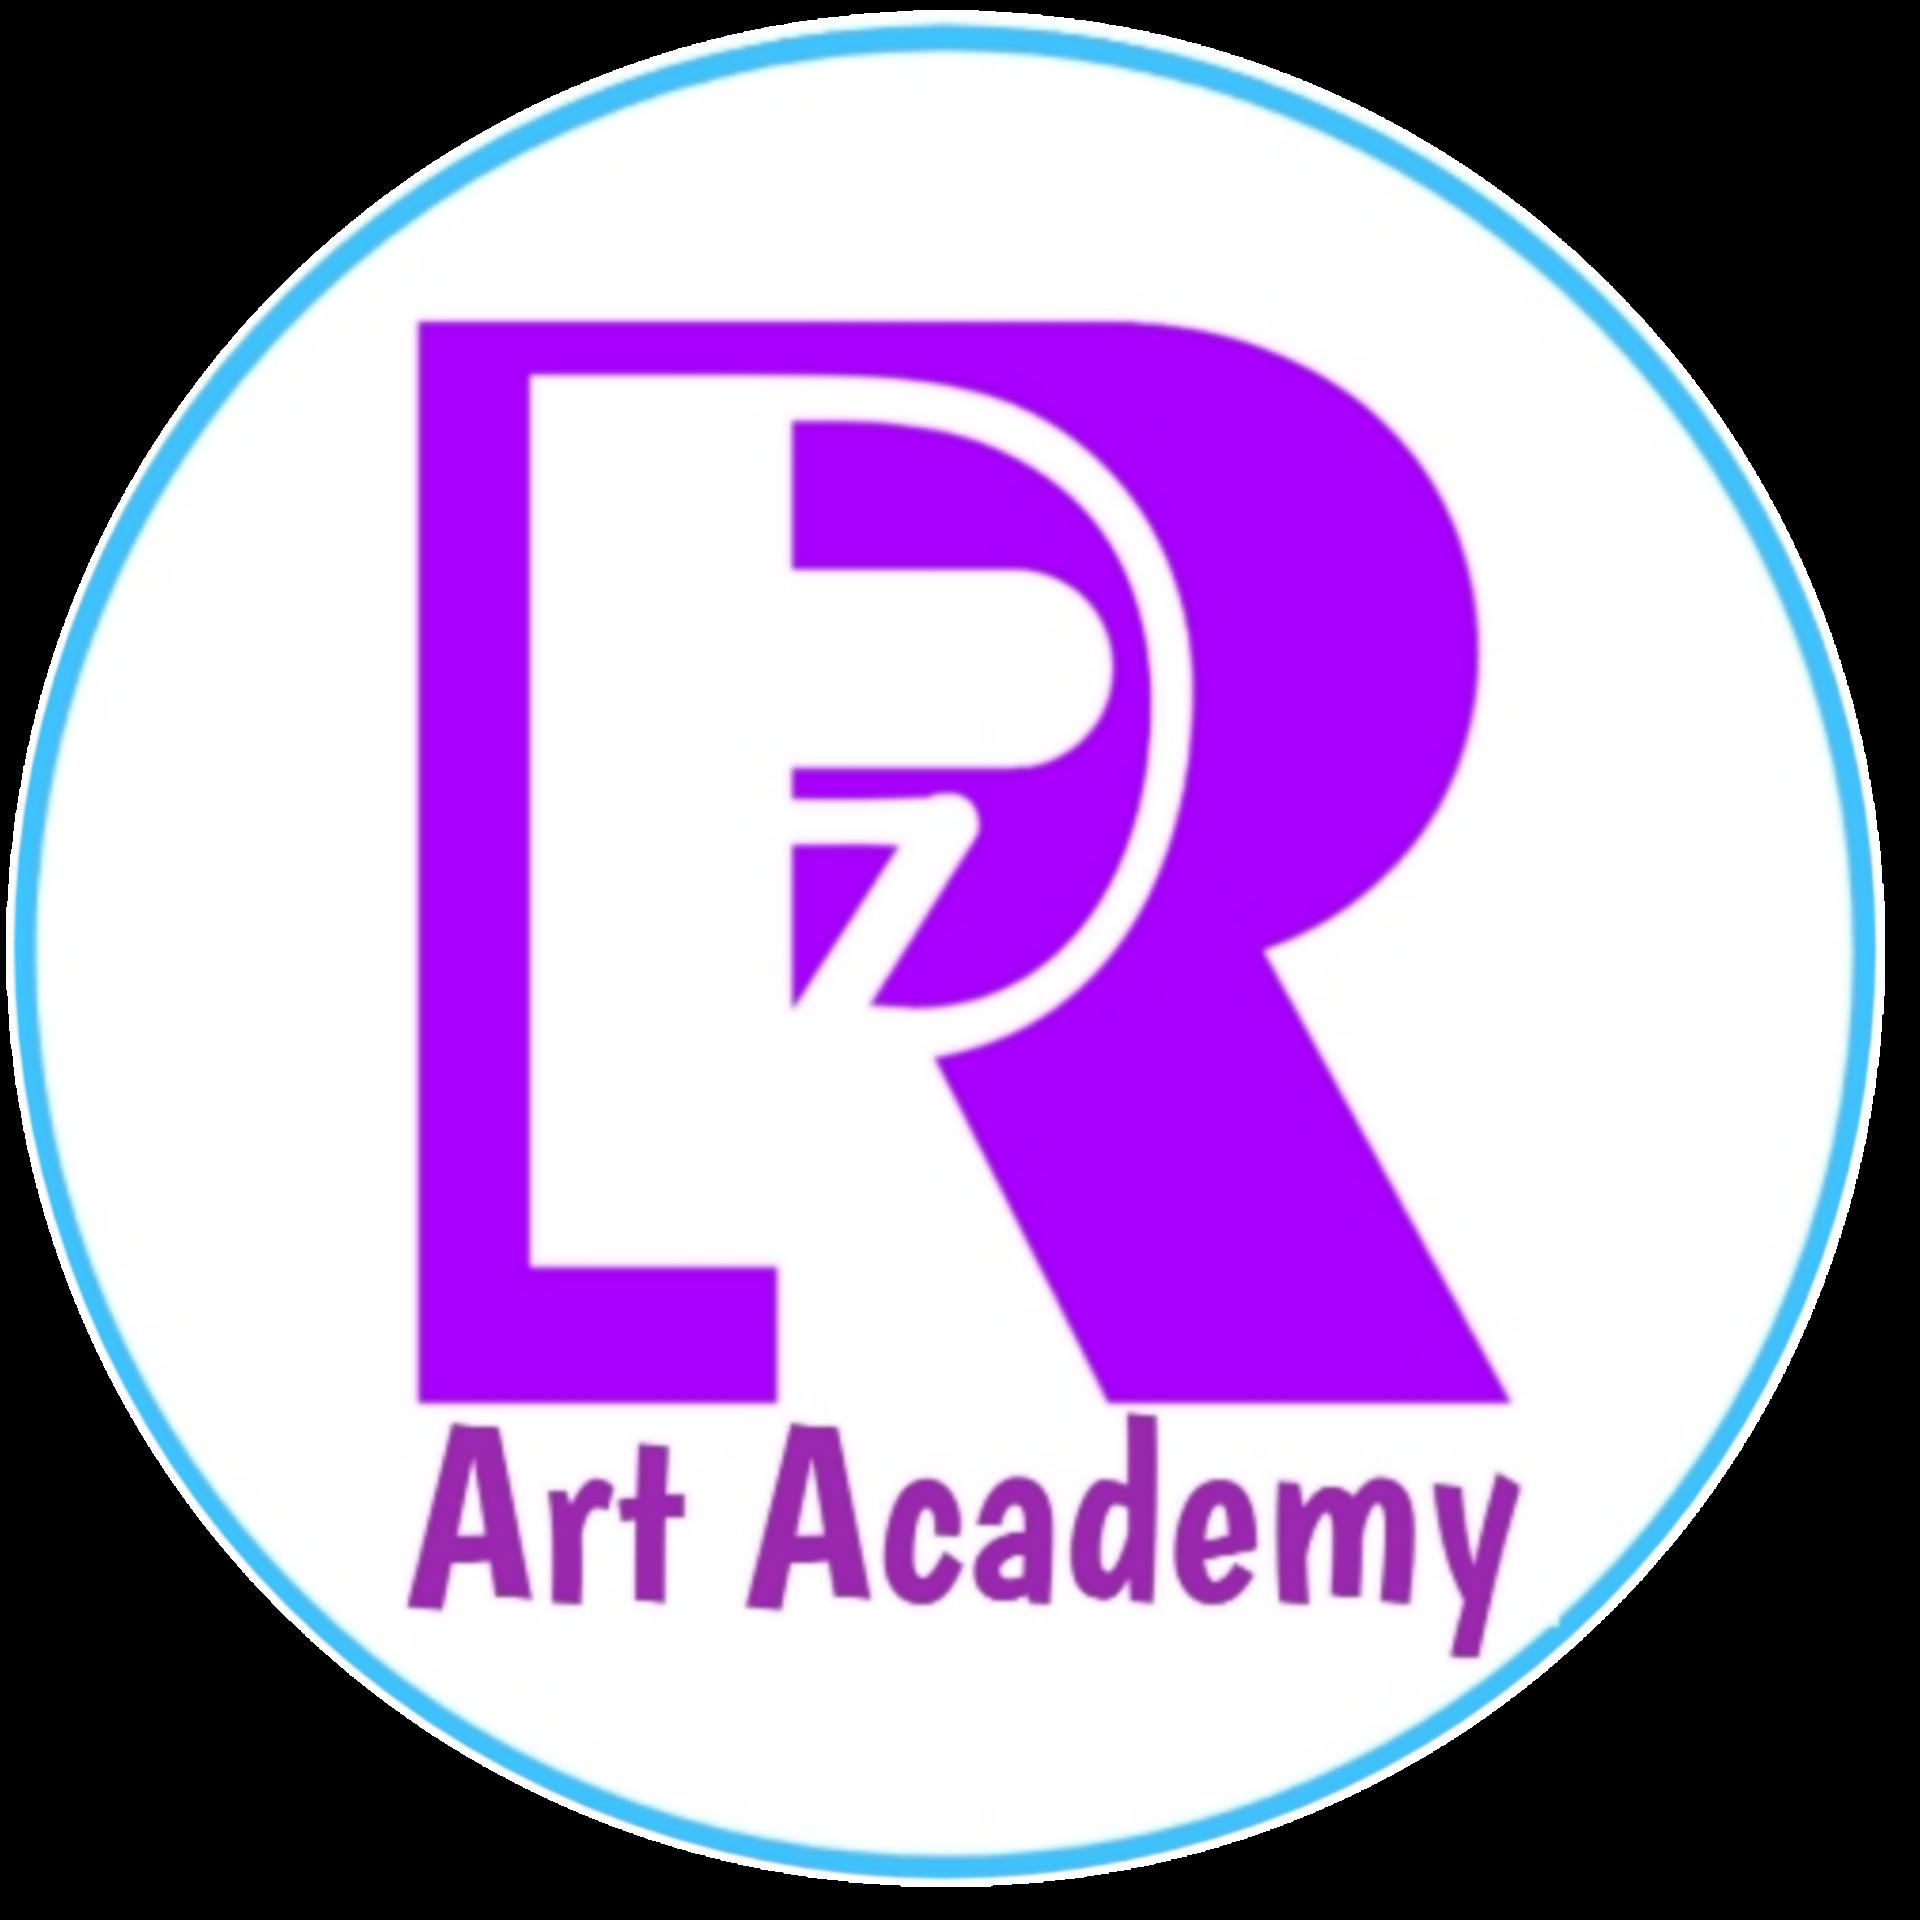 RP7 Academy